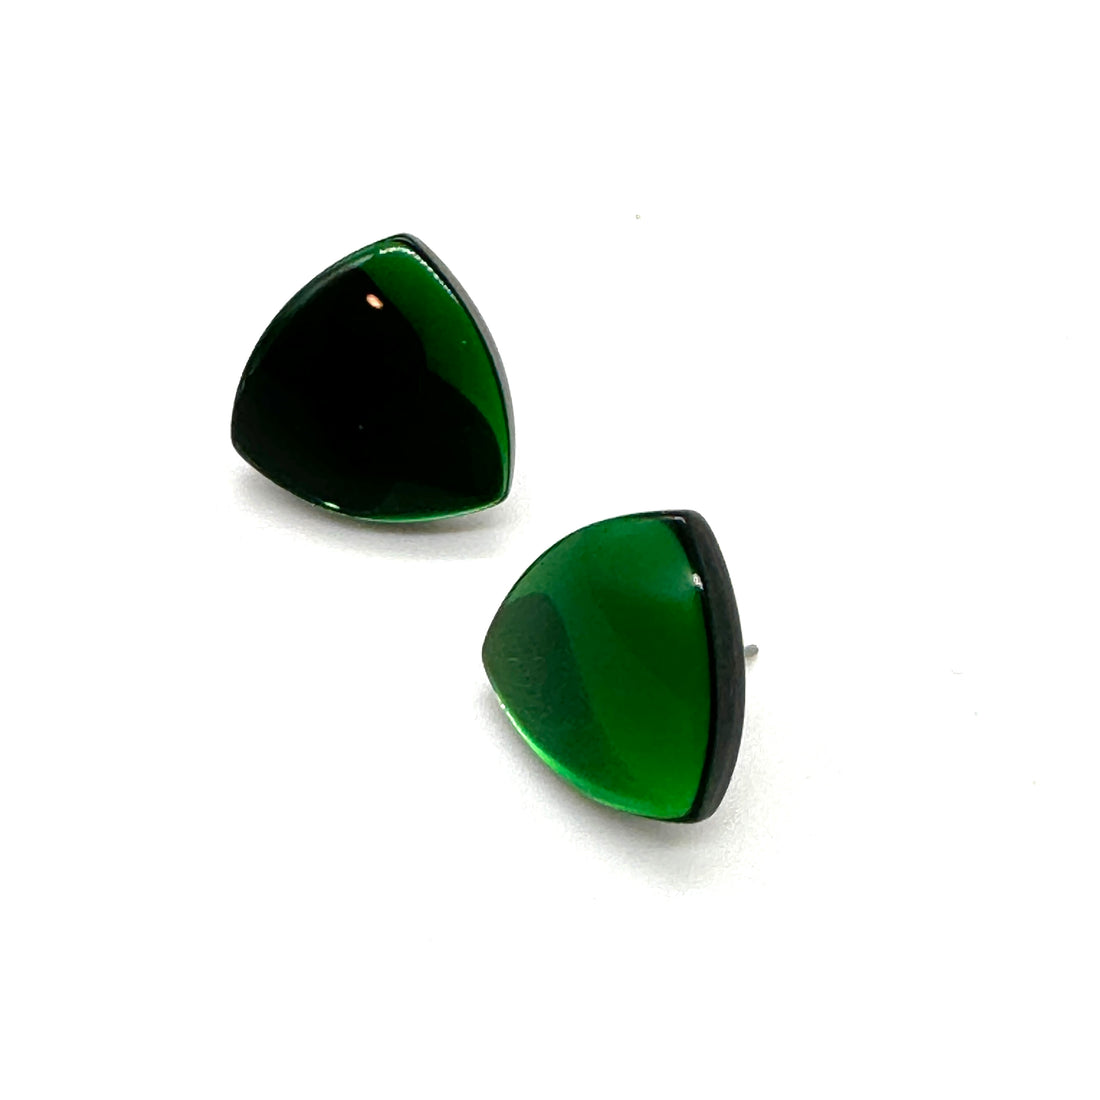 Incredible GREEN Glow Studs - Kooky Deadstock Earrings *Final Sale